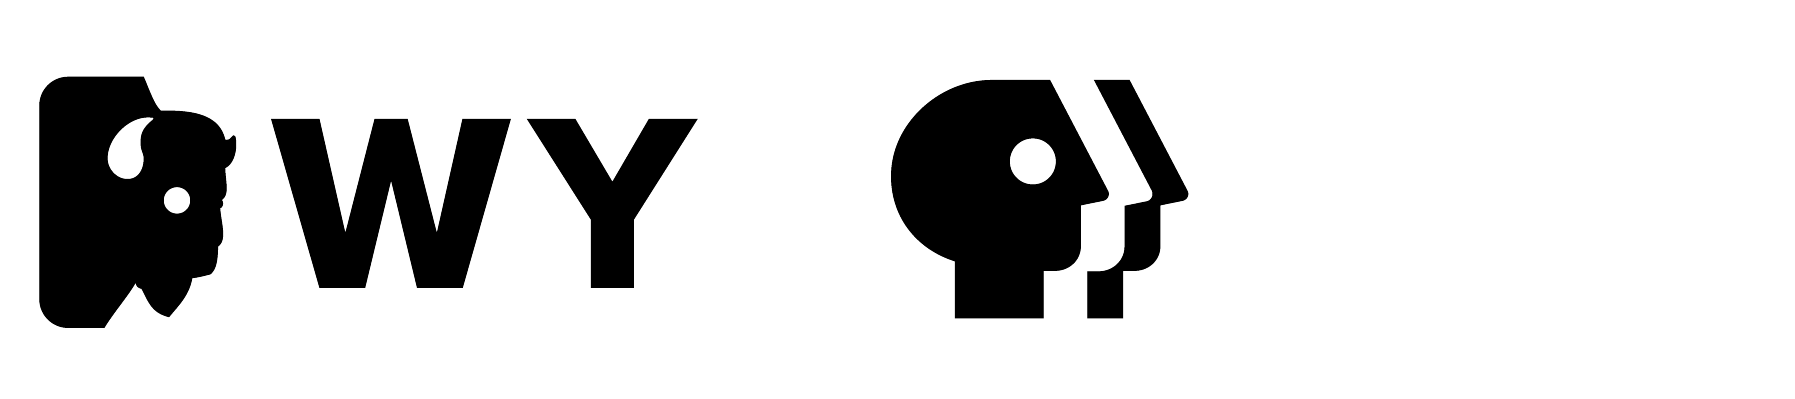 Wyoming PBS Logo